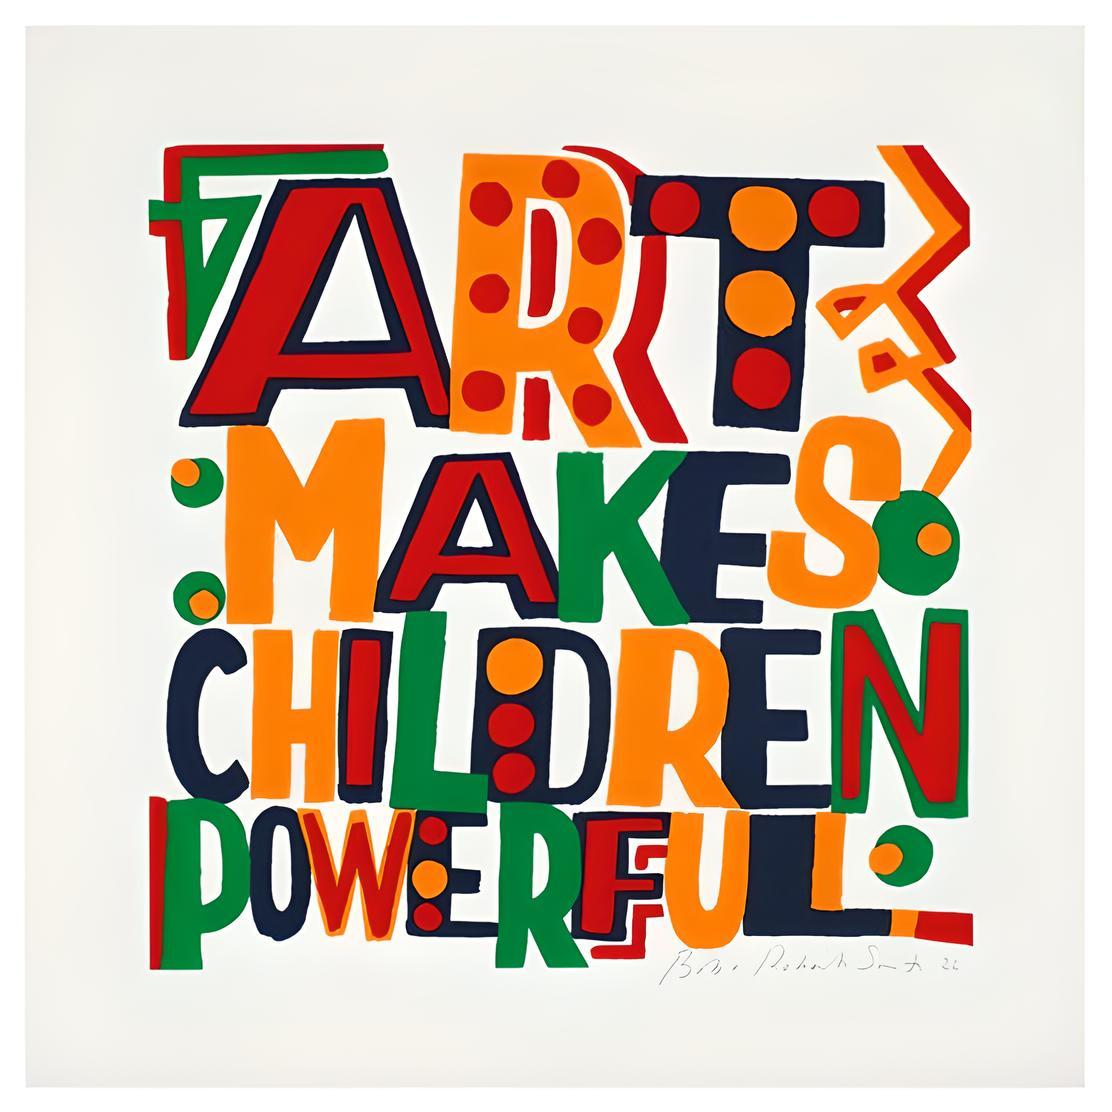 El arte hace poderosos a los niños